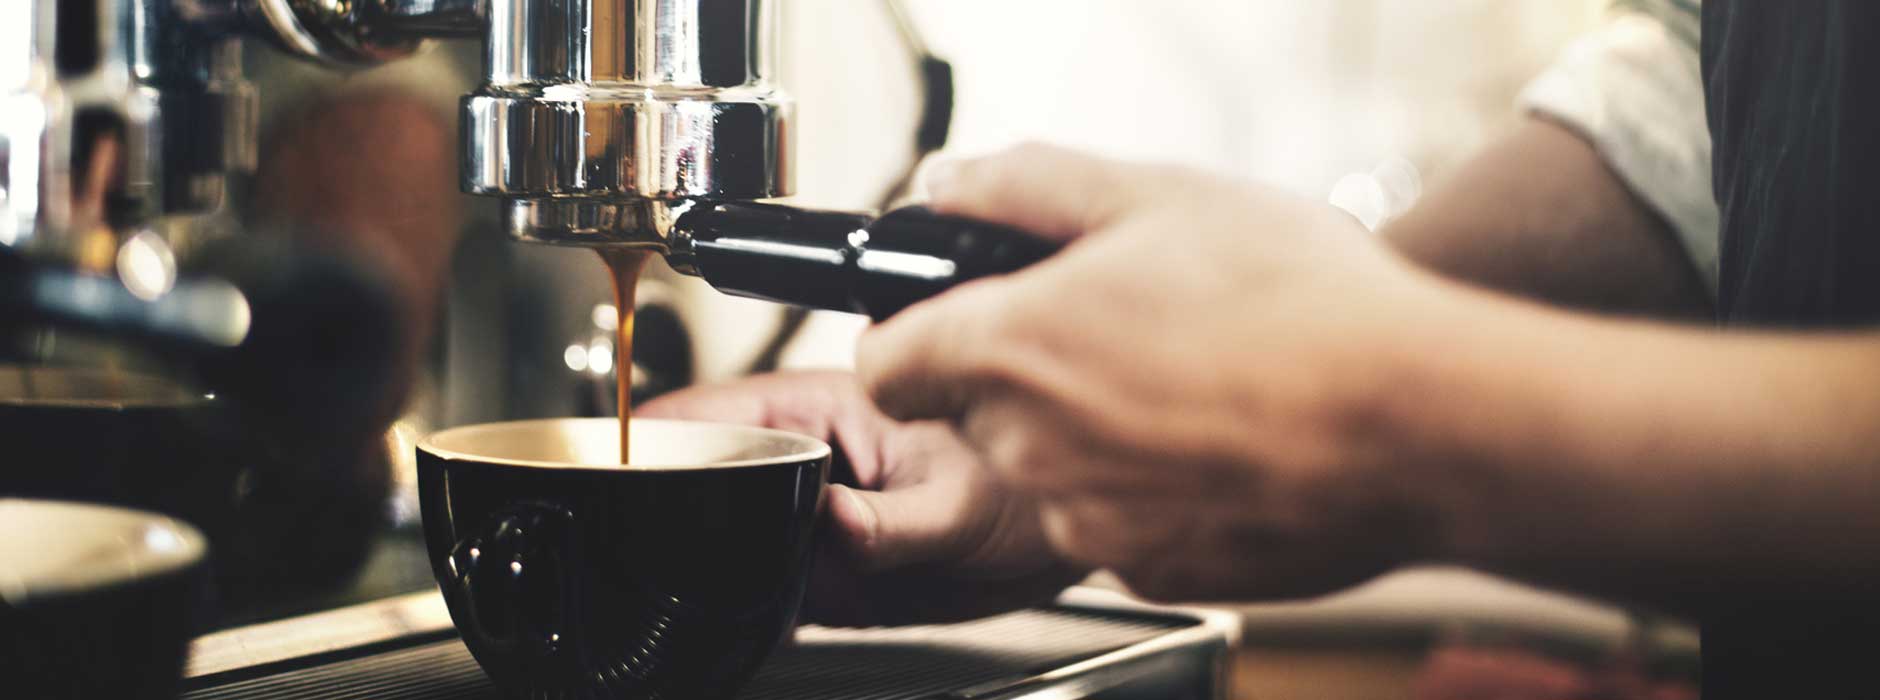 Бариста крема. Кофе бариста. Приготовление кофе Эстетика. Бариста готовит кофе. Кофе бариста фон.